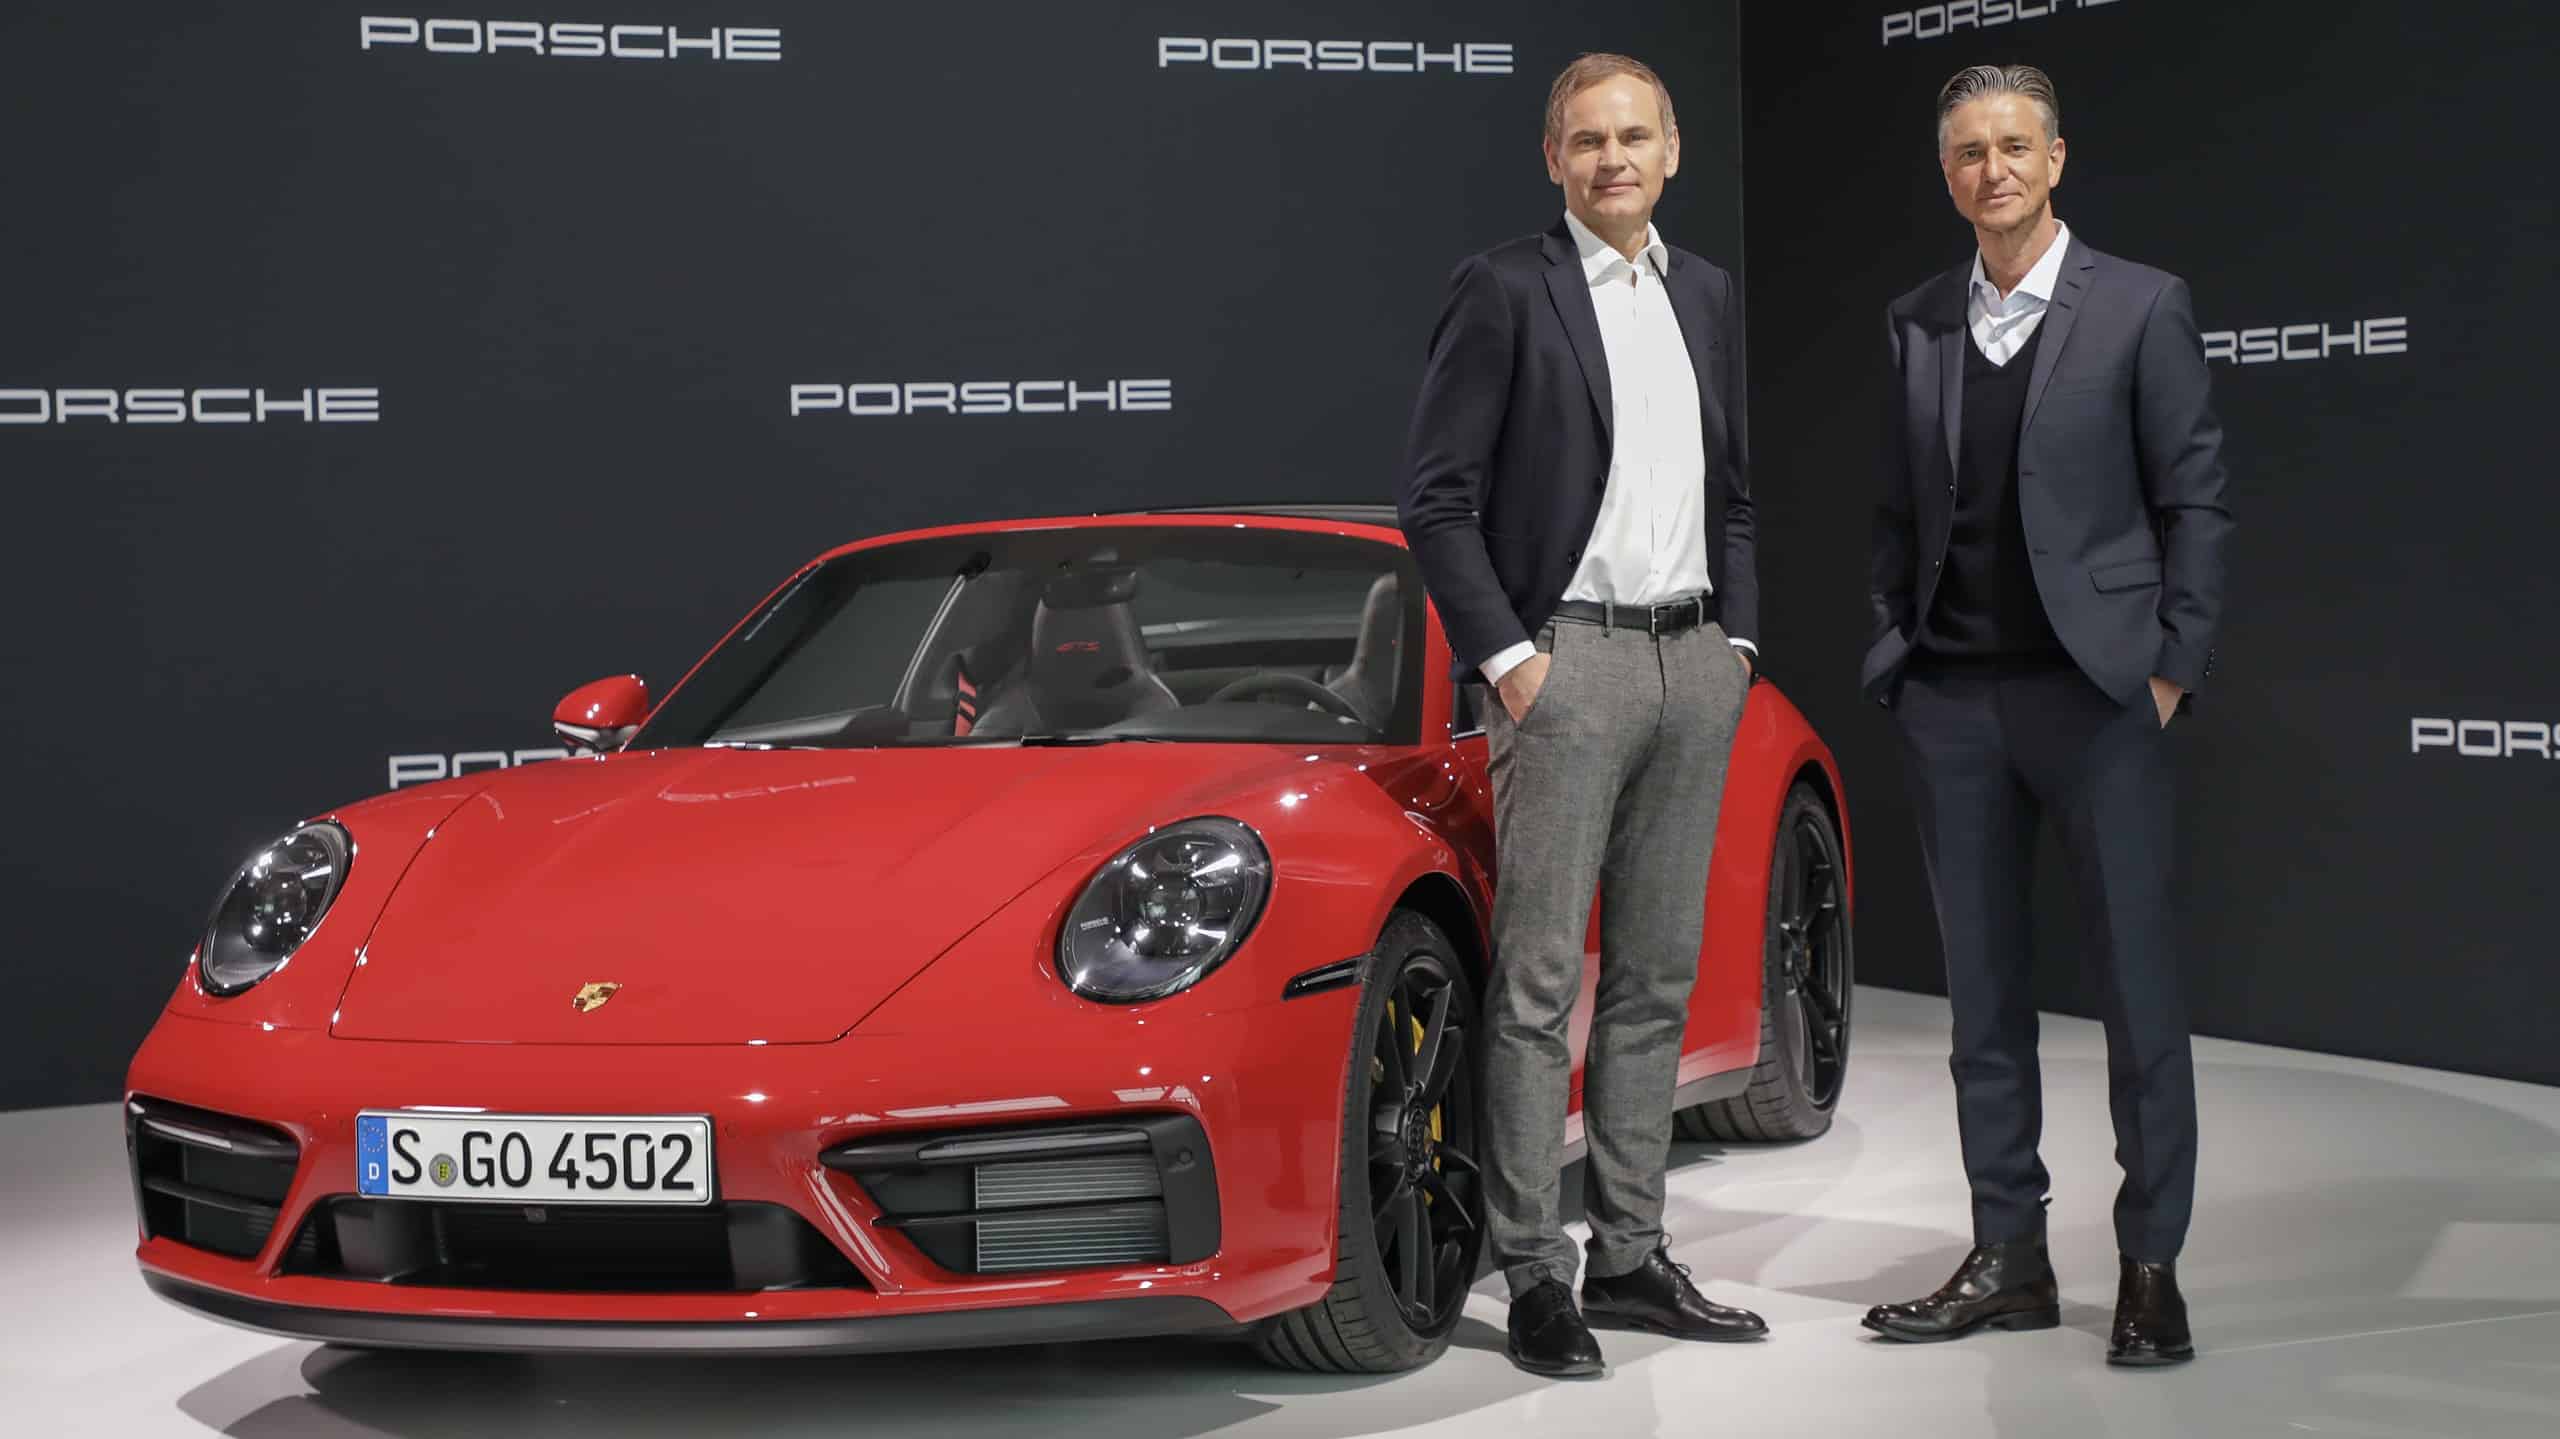 Porsche admins standing next to a Porsche 911 Targa car in 2022 annual meeting event